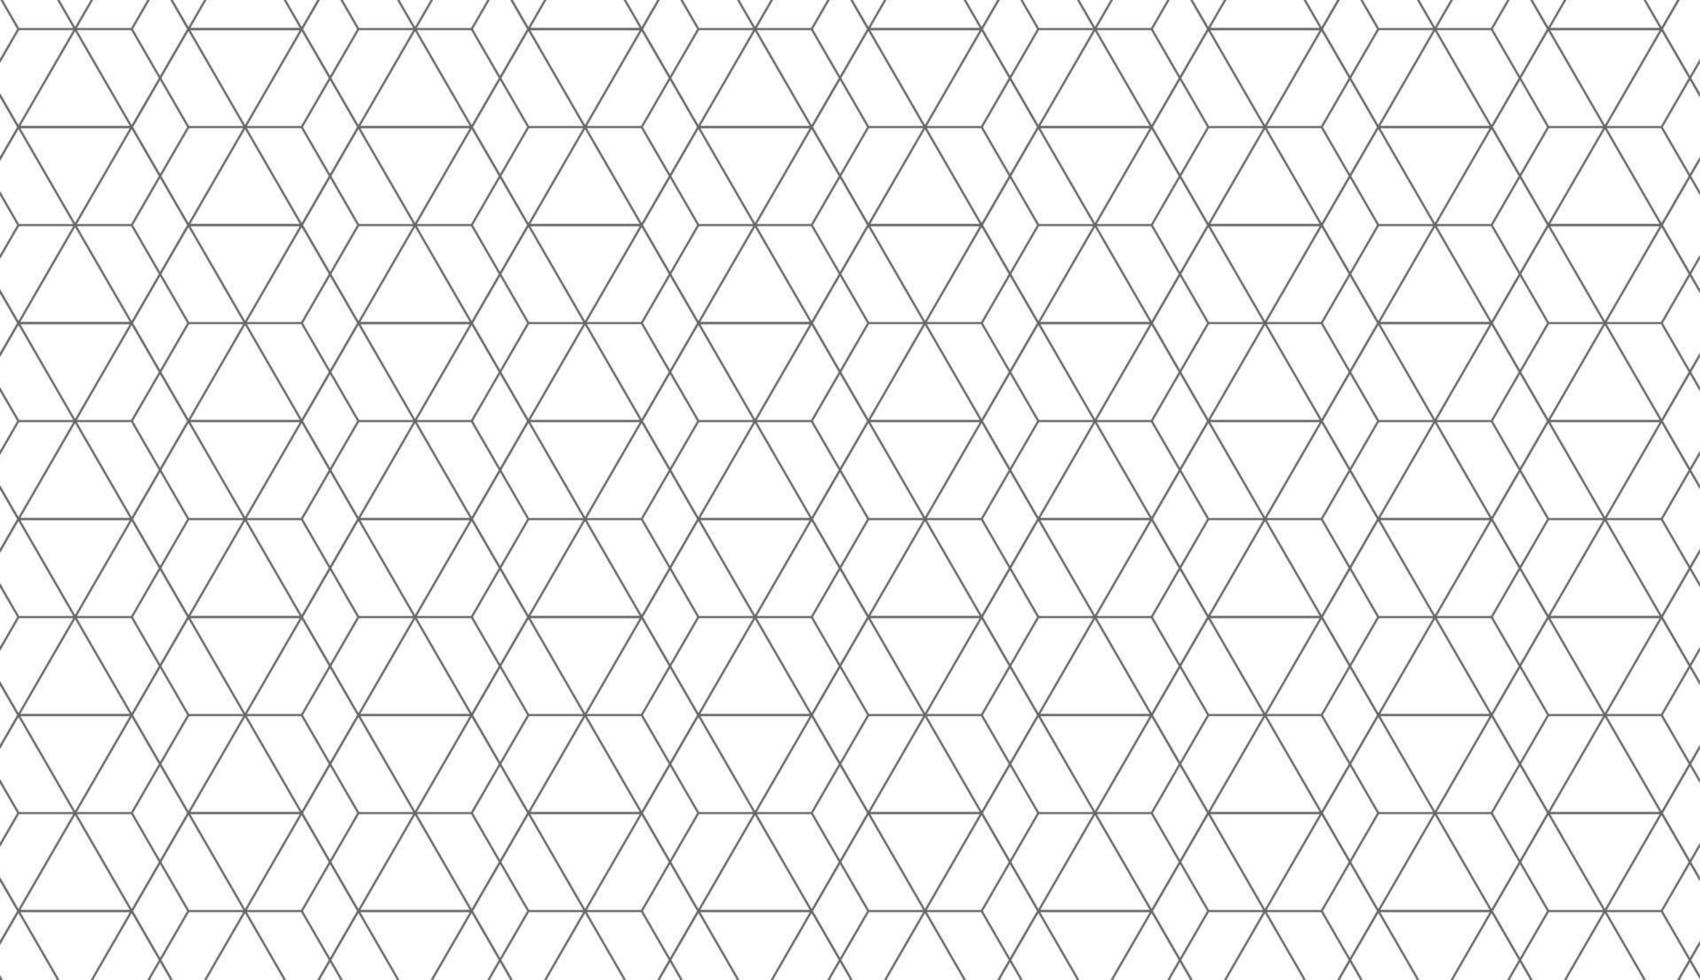 patrón geométrico sin fisuras. fondo de vector de diseño moderno para fondo web o impresión en papel.